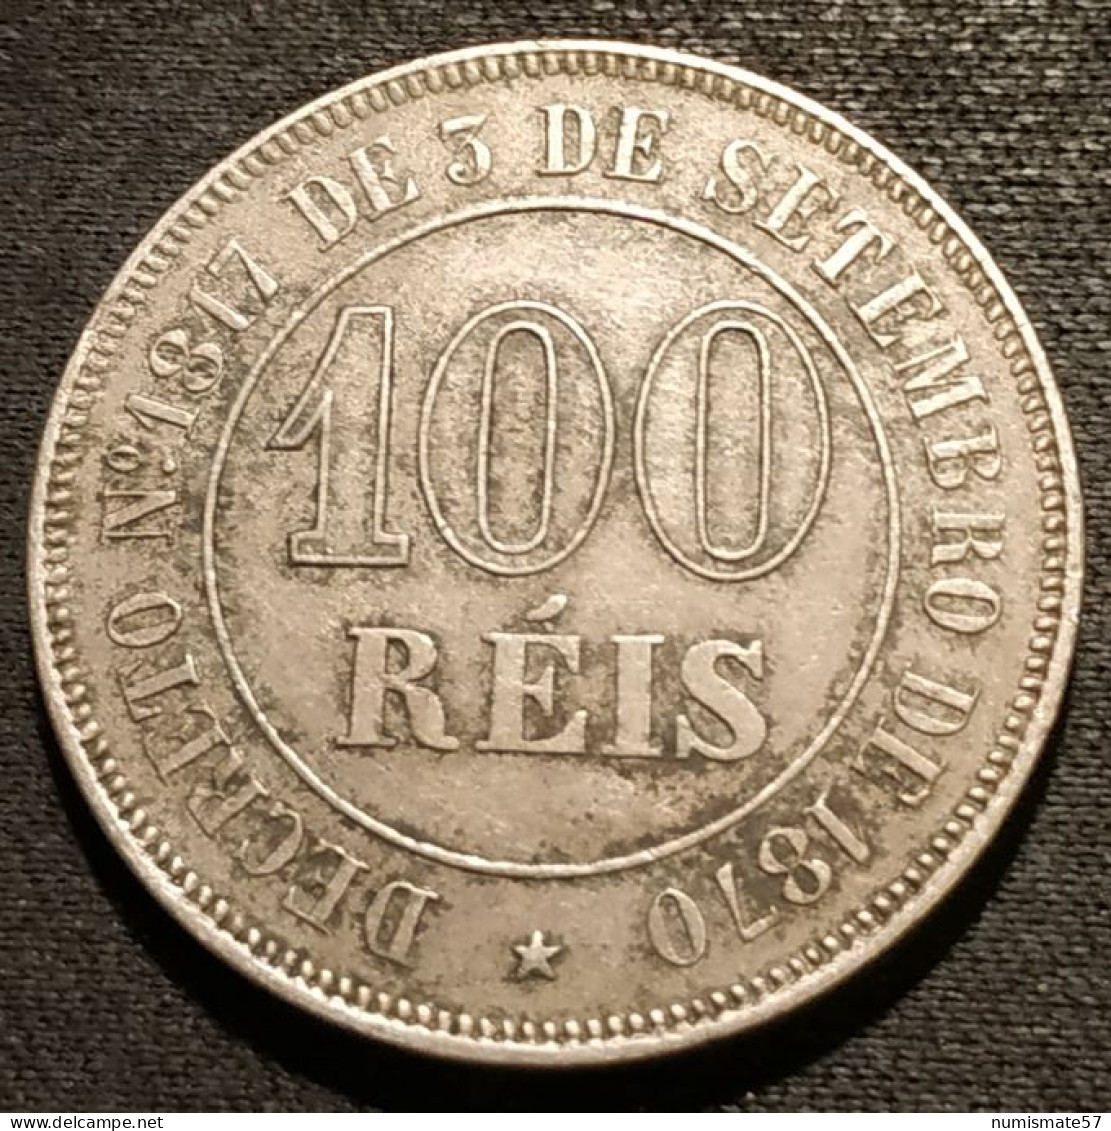 BRESIL - 100 REIS 1871 - Pedro II - KM 477 - Brasil - Brazil - Brasile